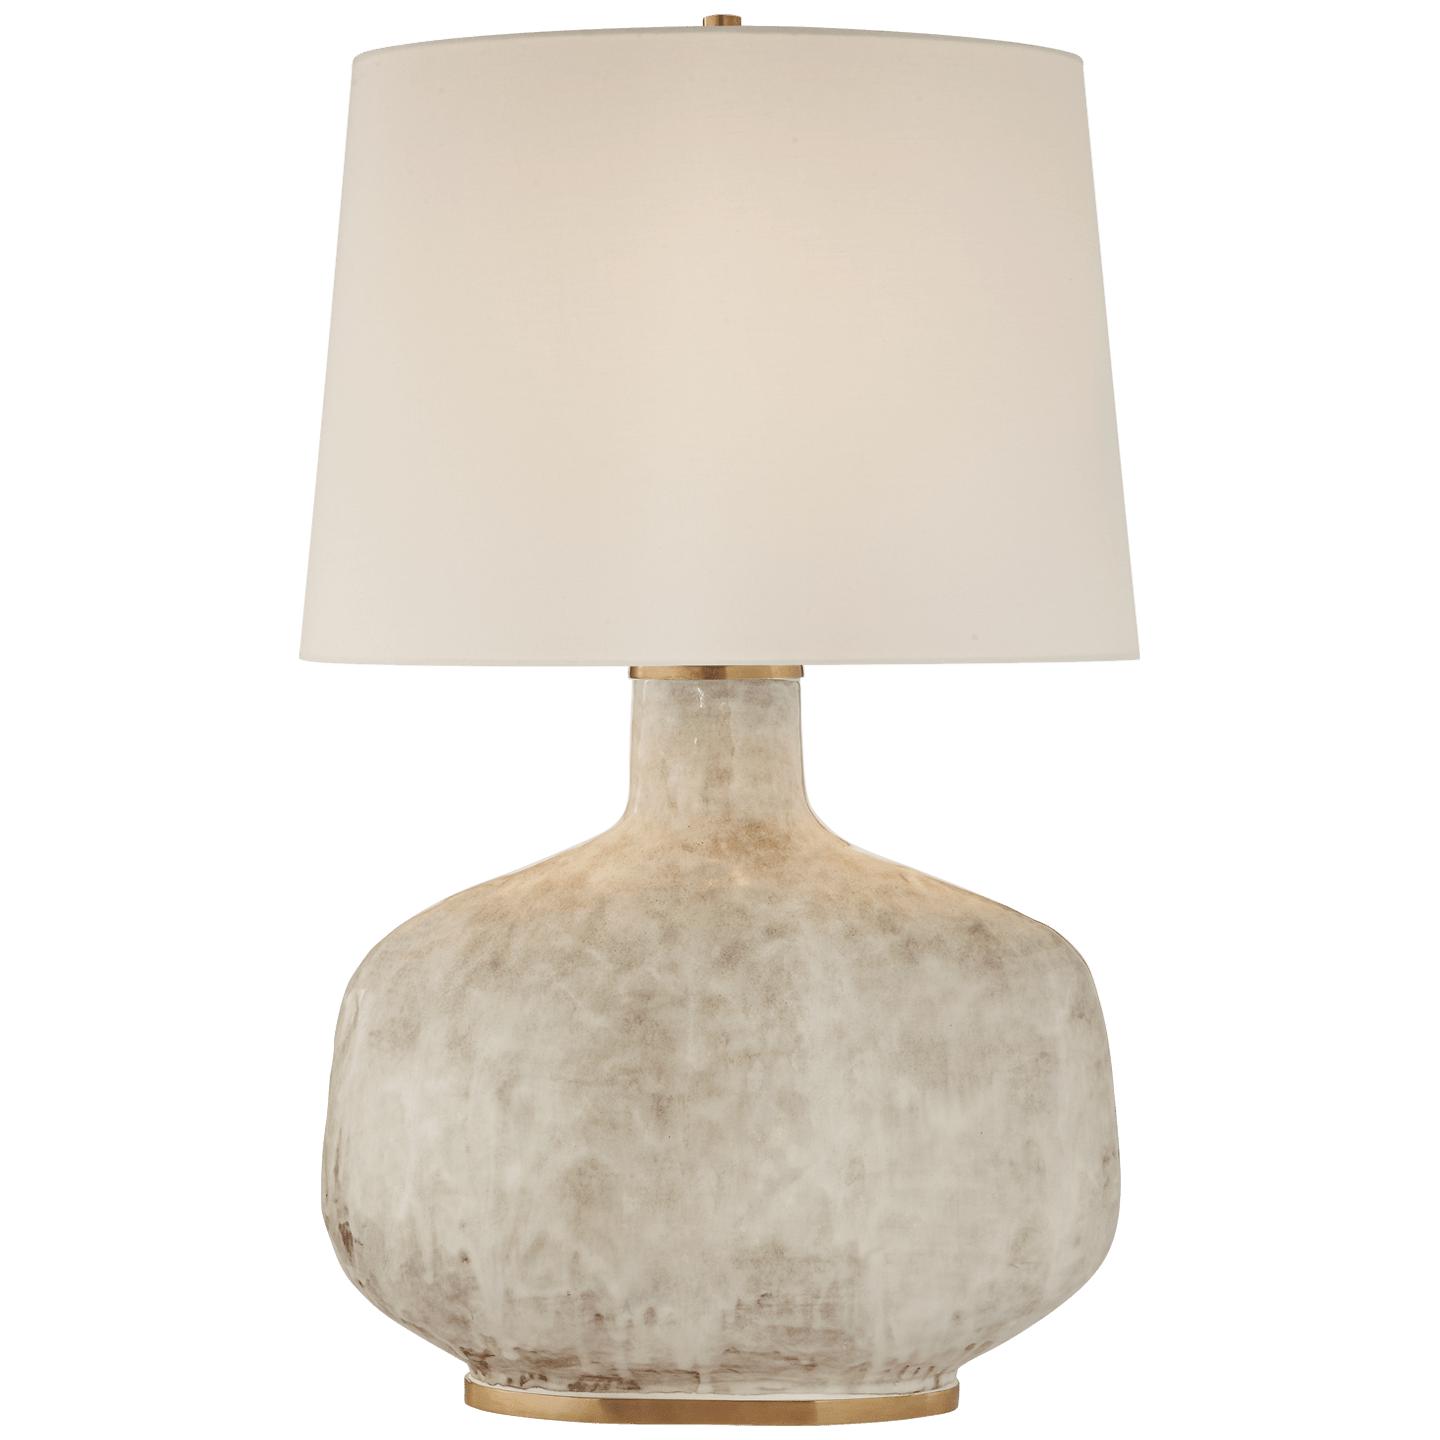 Купить Настольная лампа Beton Large Table Lamp в интернет-магазине roooms.ru